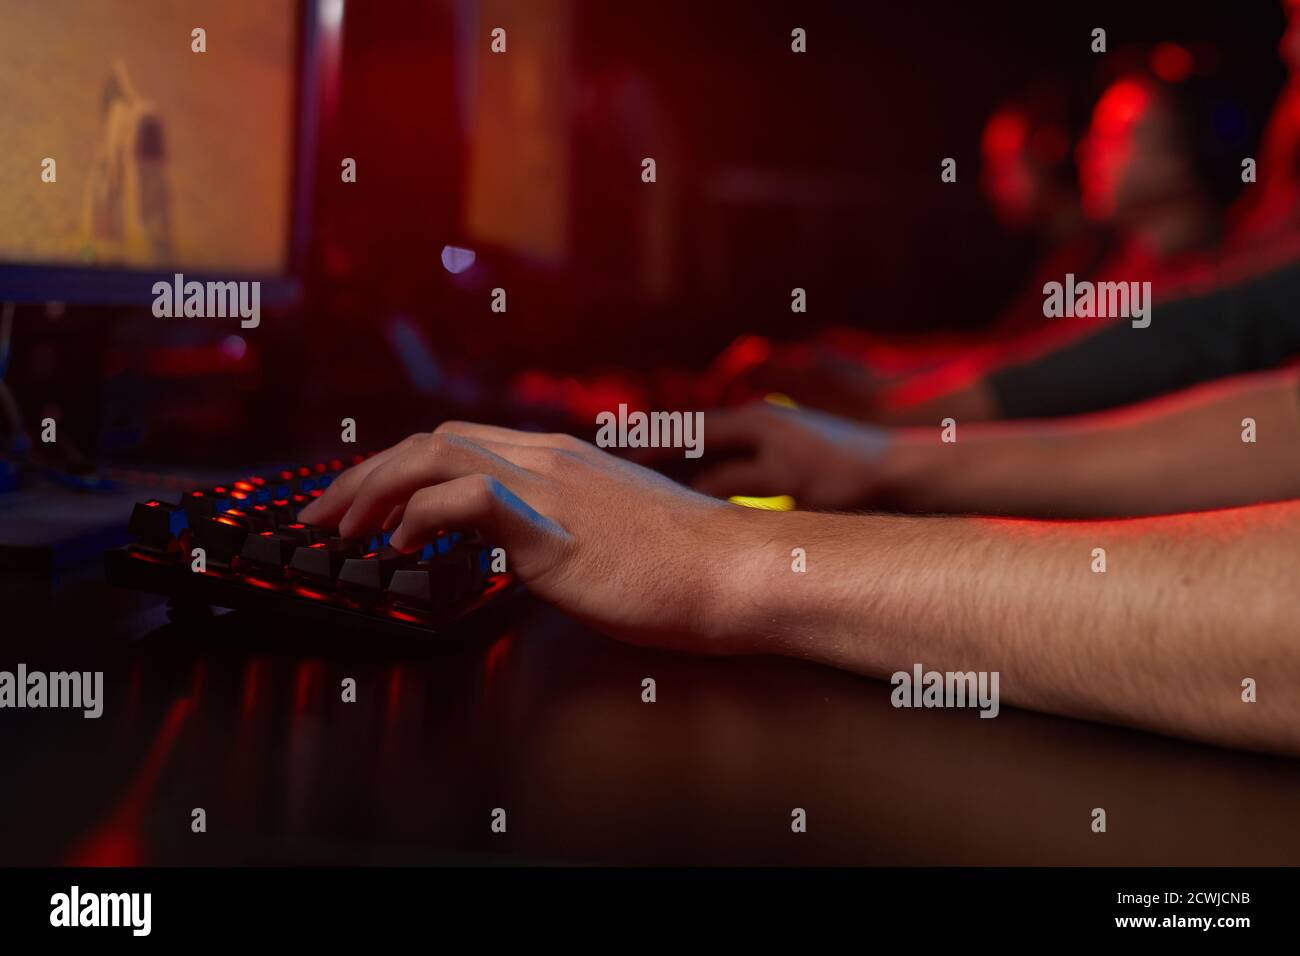 Primo piano del giovane seduto al tavolo e digitando sulla tastiera del computer in una stanza buia Foto Stock